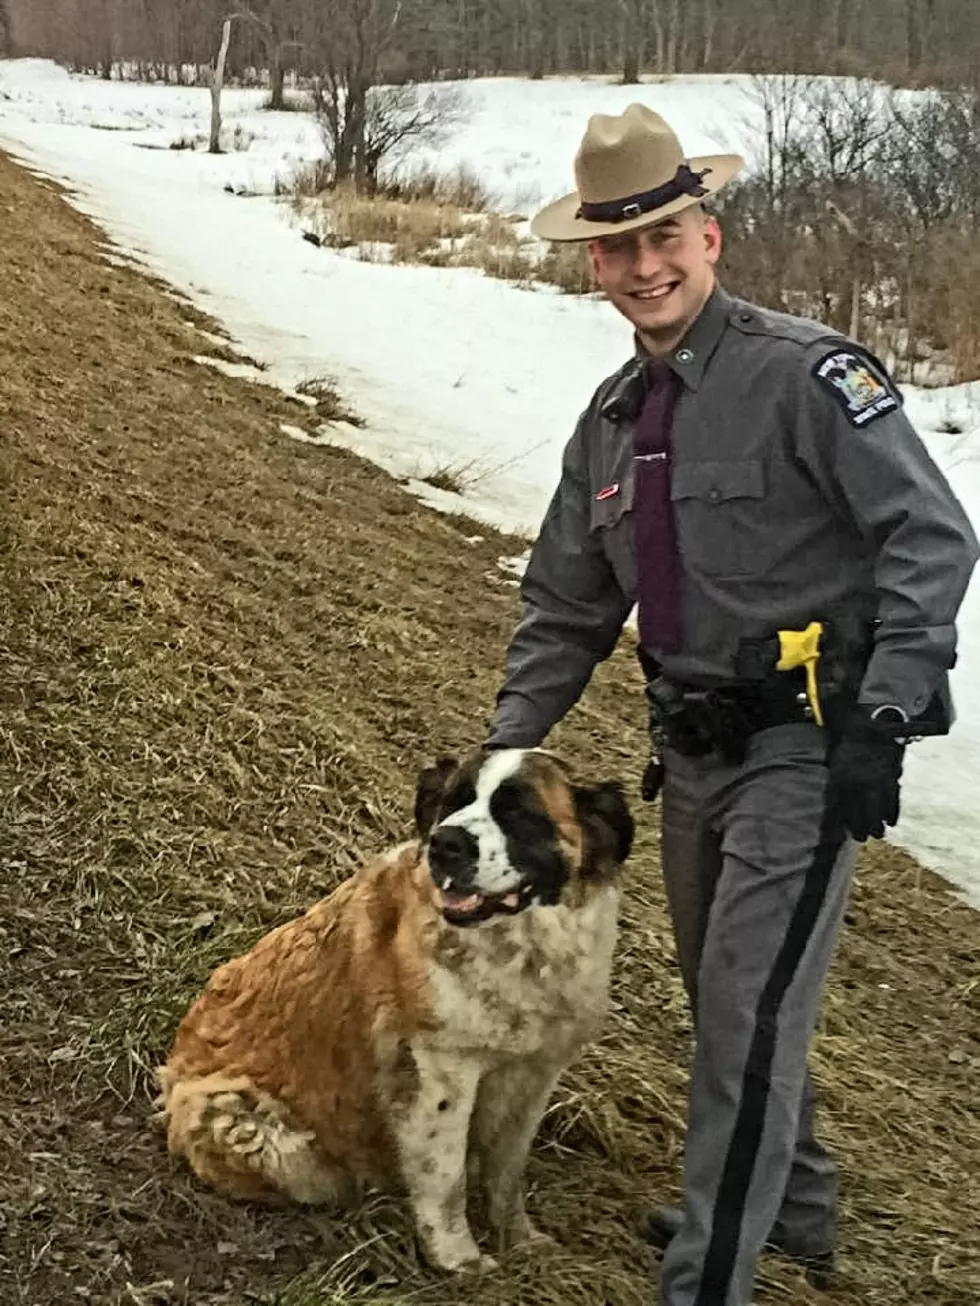 Trooper Helps Return Dog Home Safely After It Winds Up on I-81